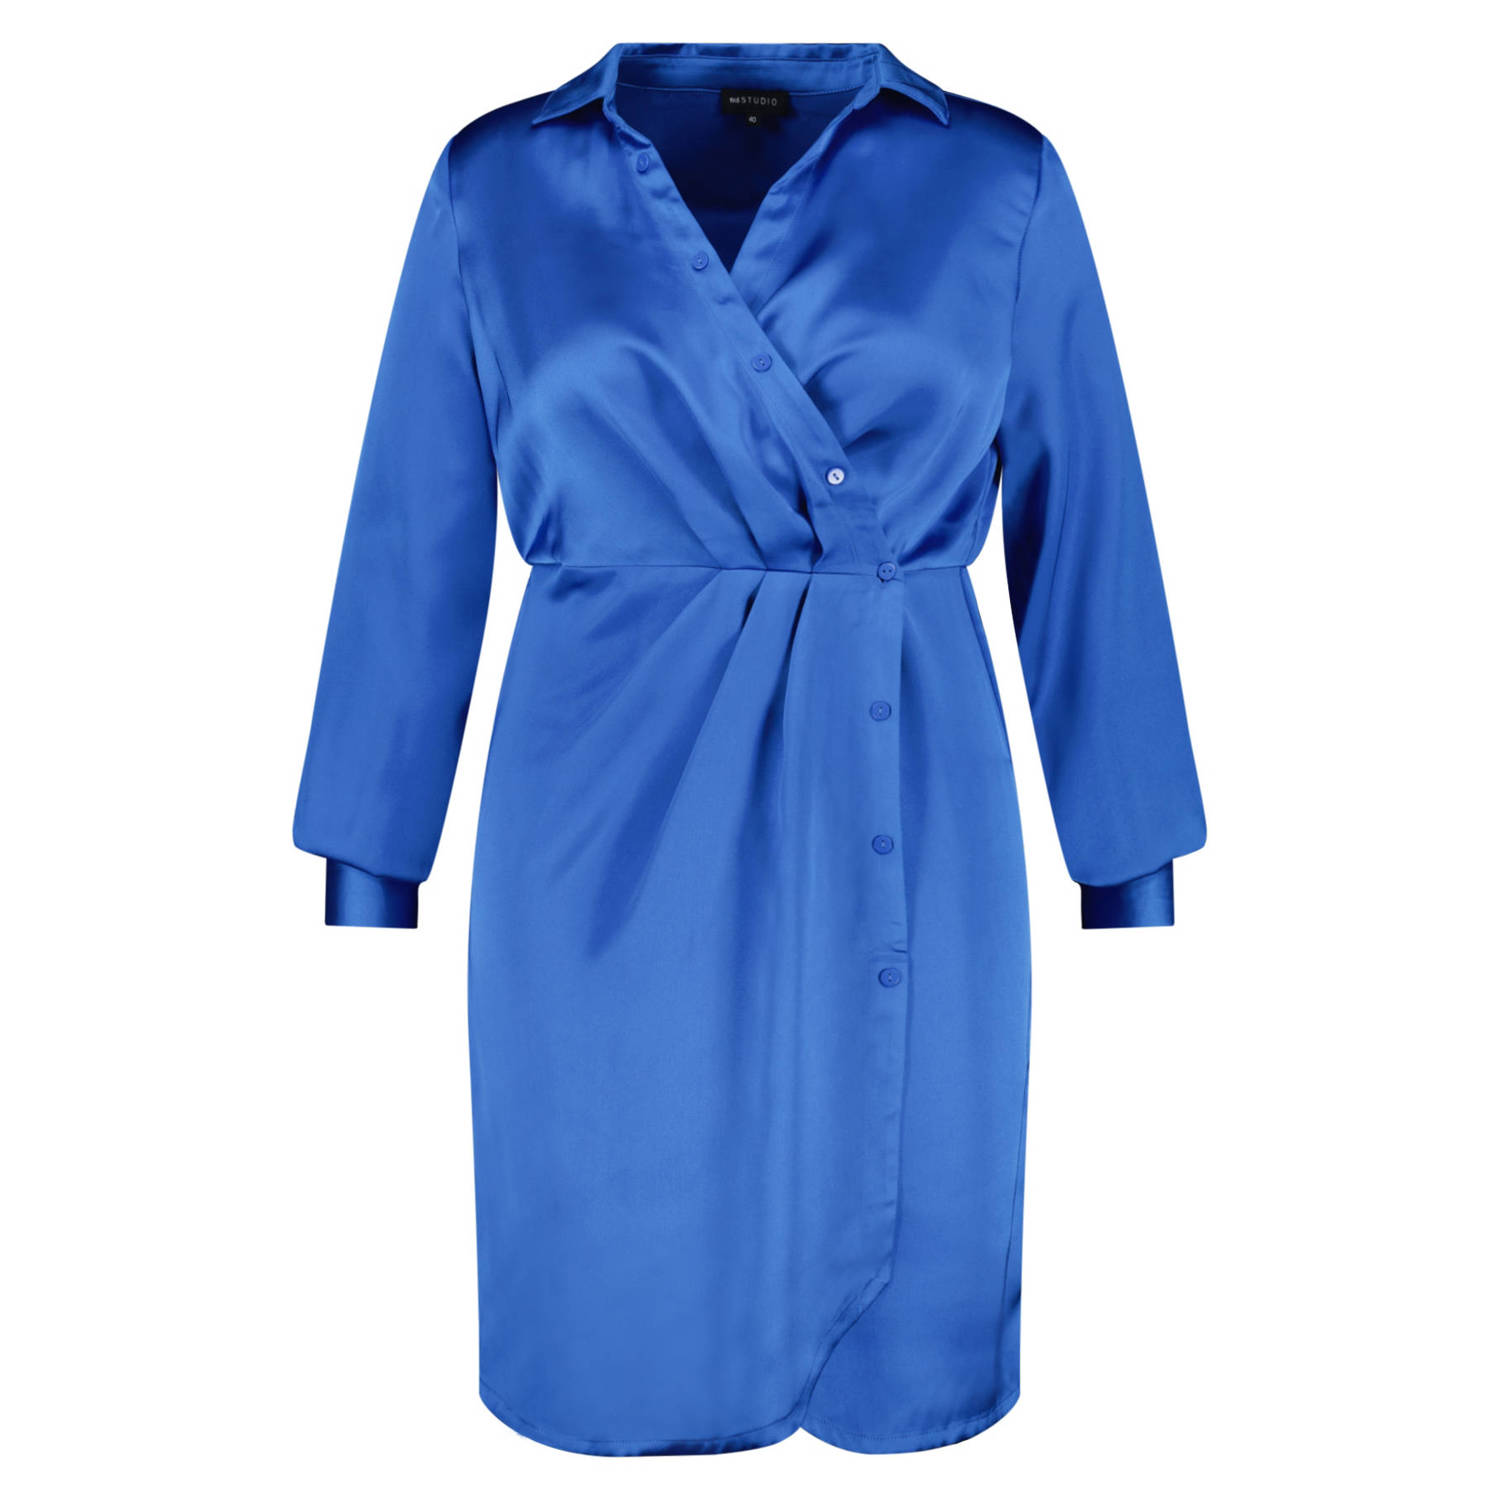 MS Mode satijnen jurk blauw